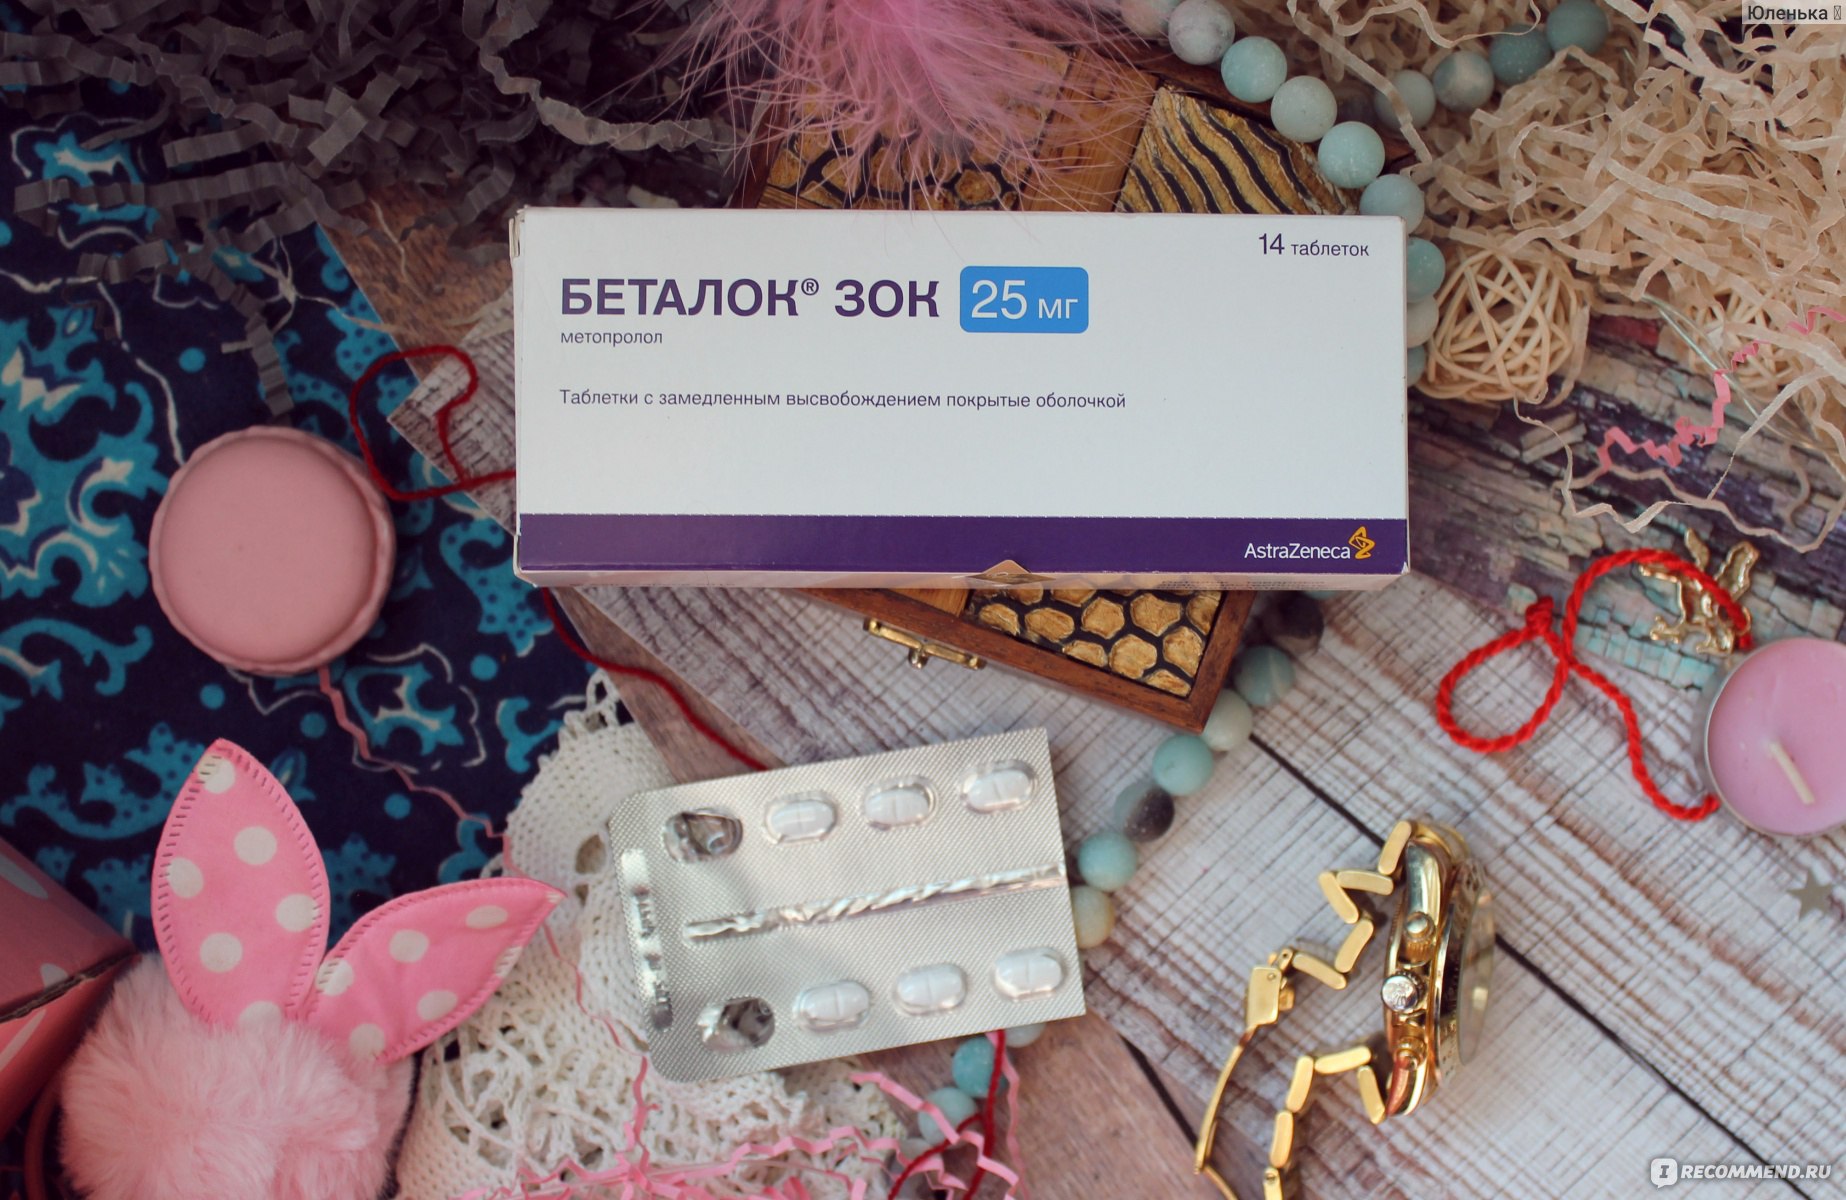 Таблетки AstraZeneca Беталок Зок - «Эти таблетки помогли мне избавиться от  экстрасистол, мучавших меня каждый день по многу-многу раз.» | отзывы